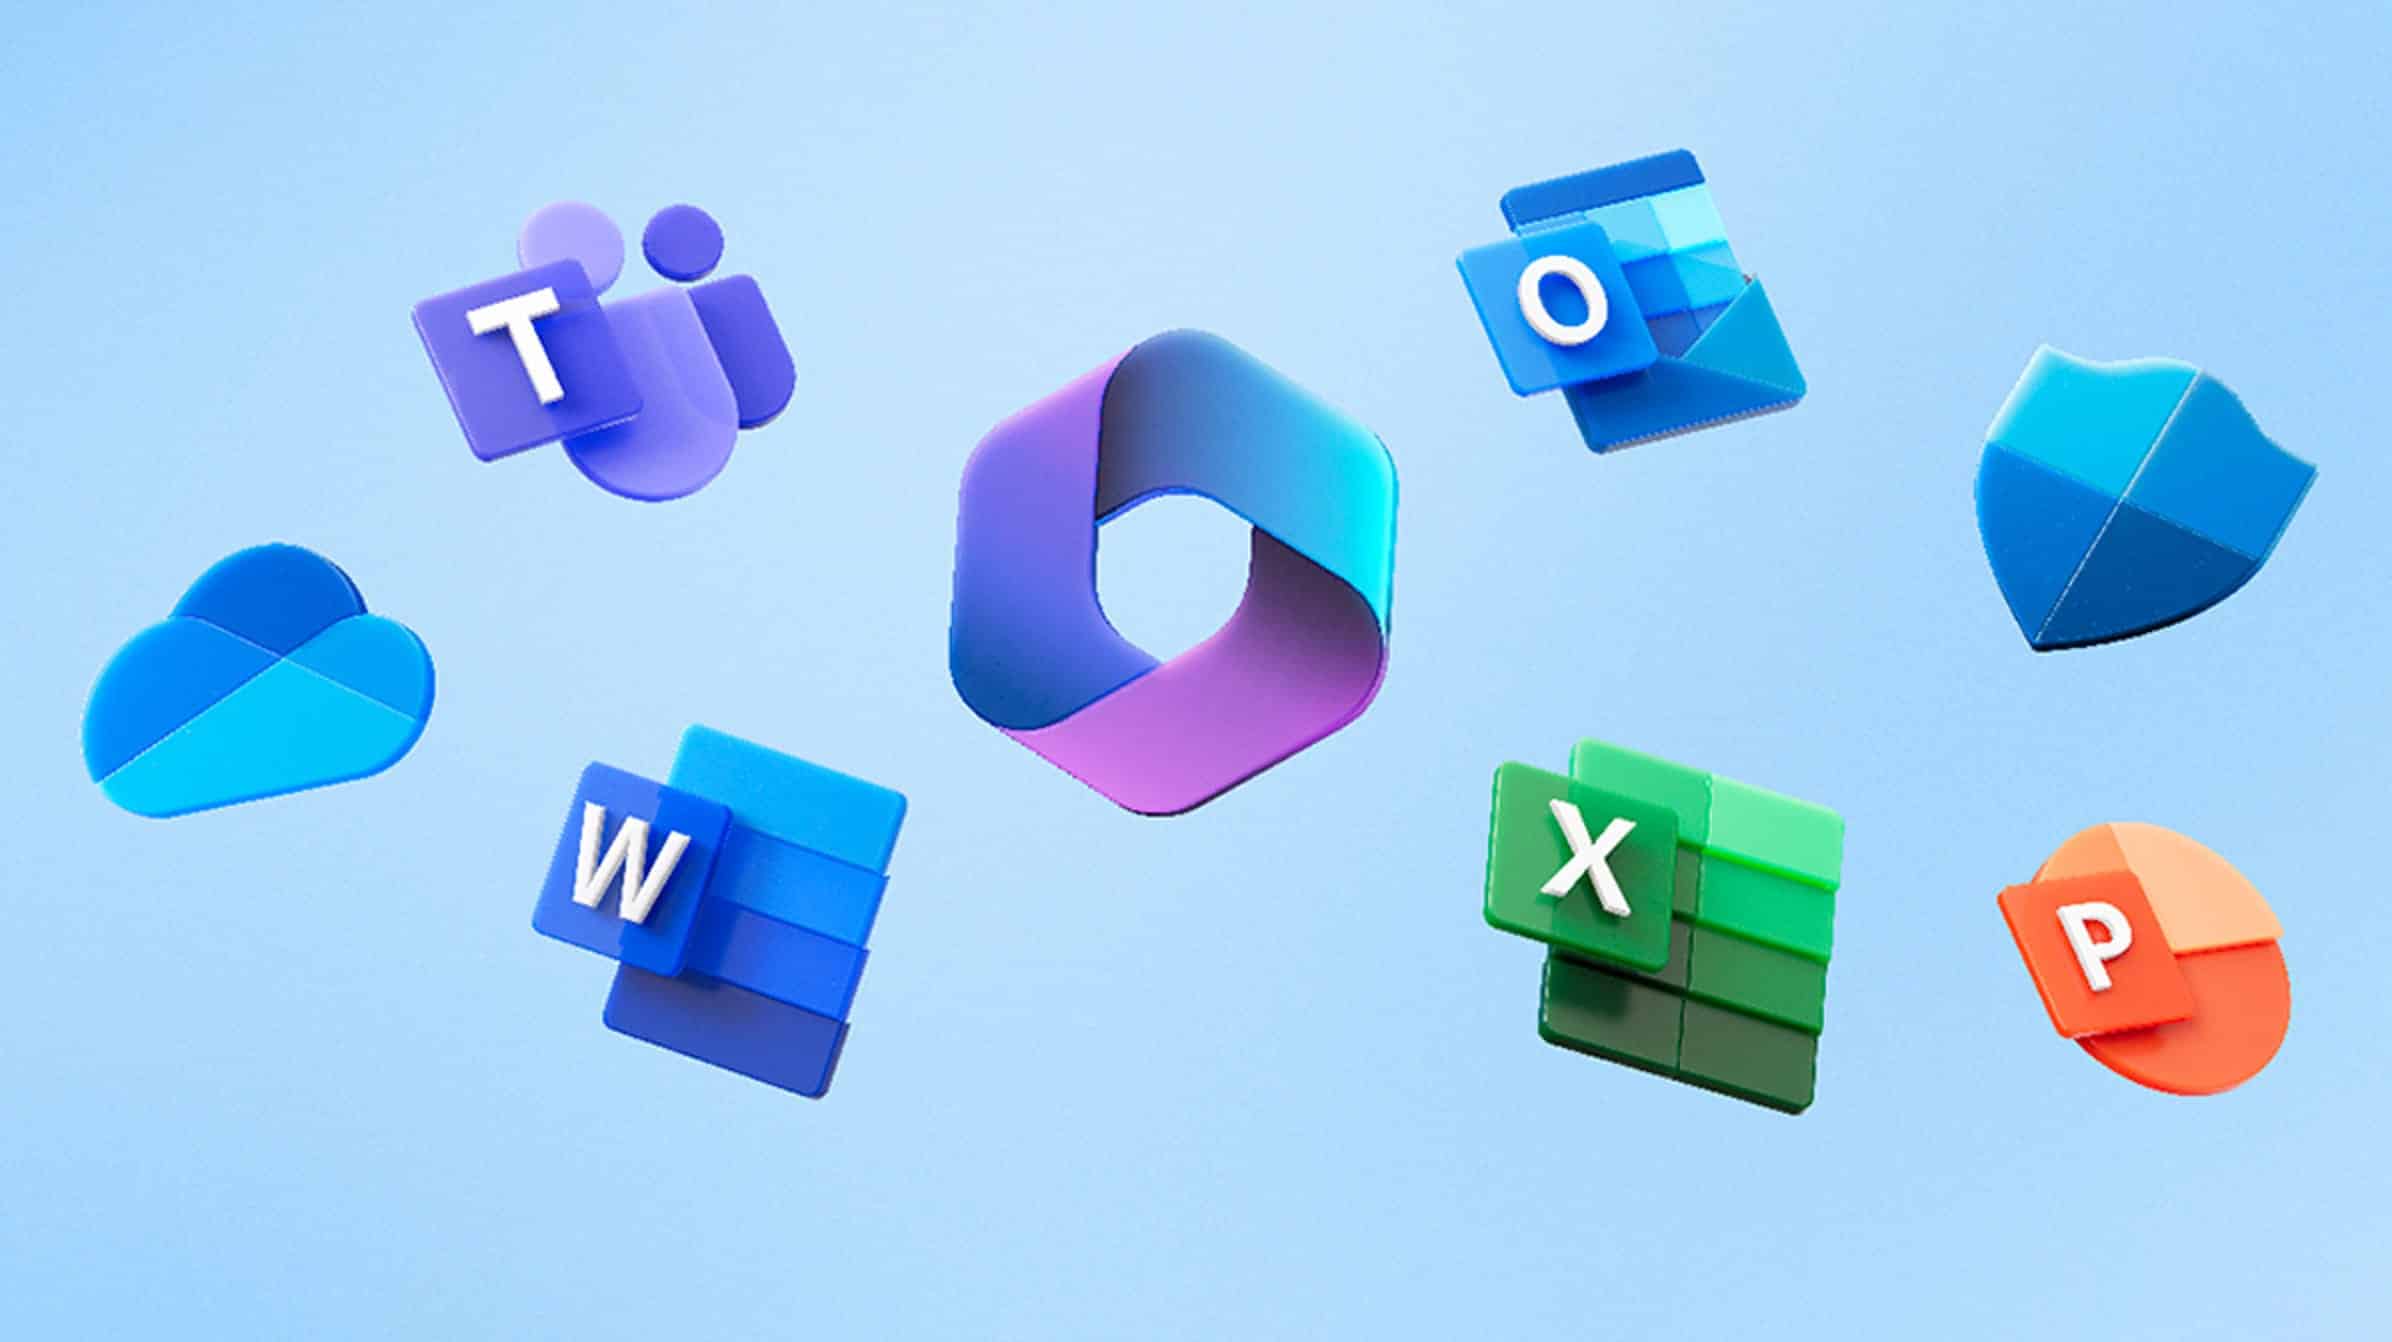 La aplicación de Microsoft Office recibe un nuevo nombre y logotipo 1